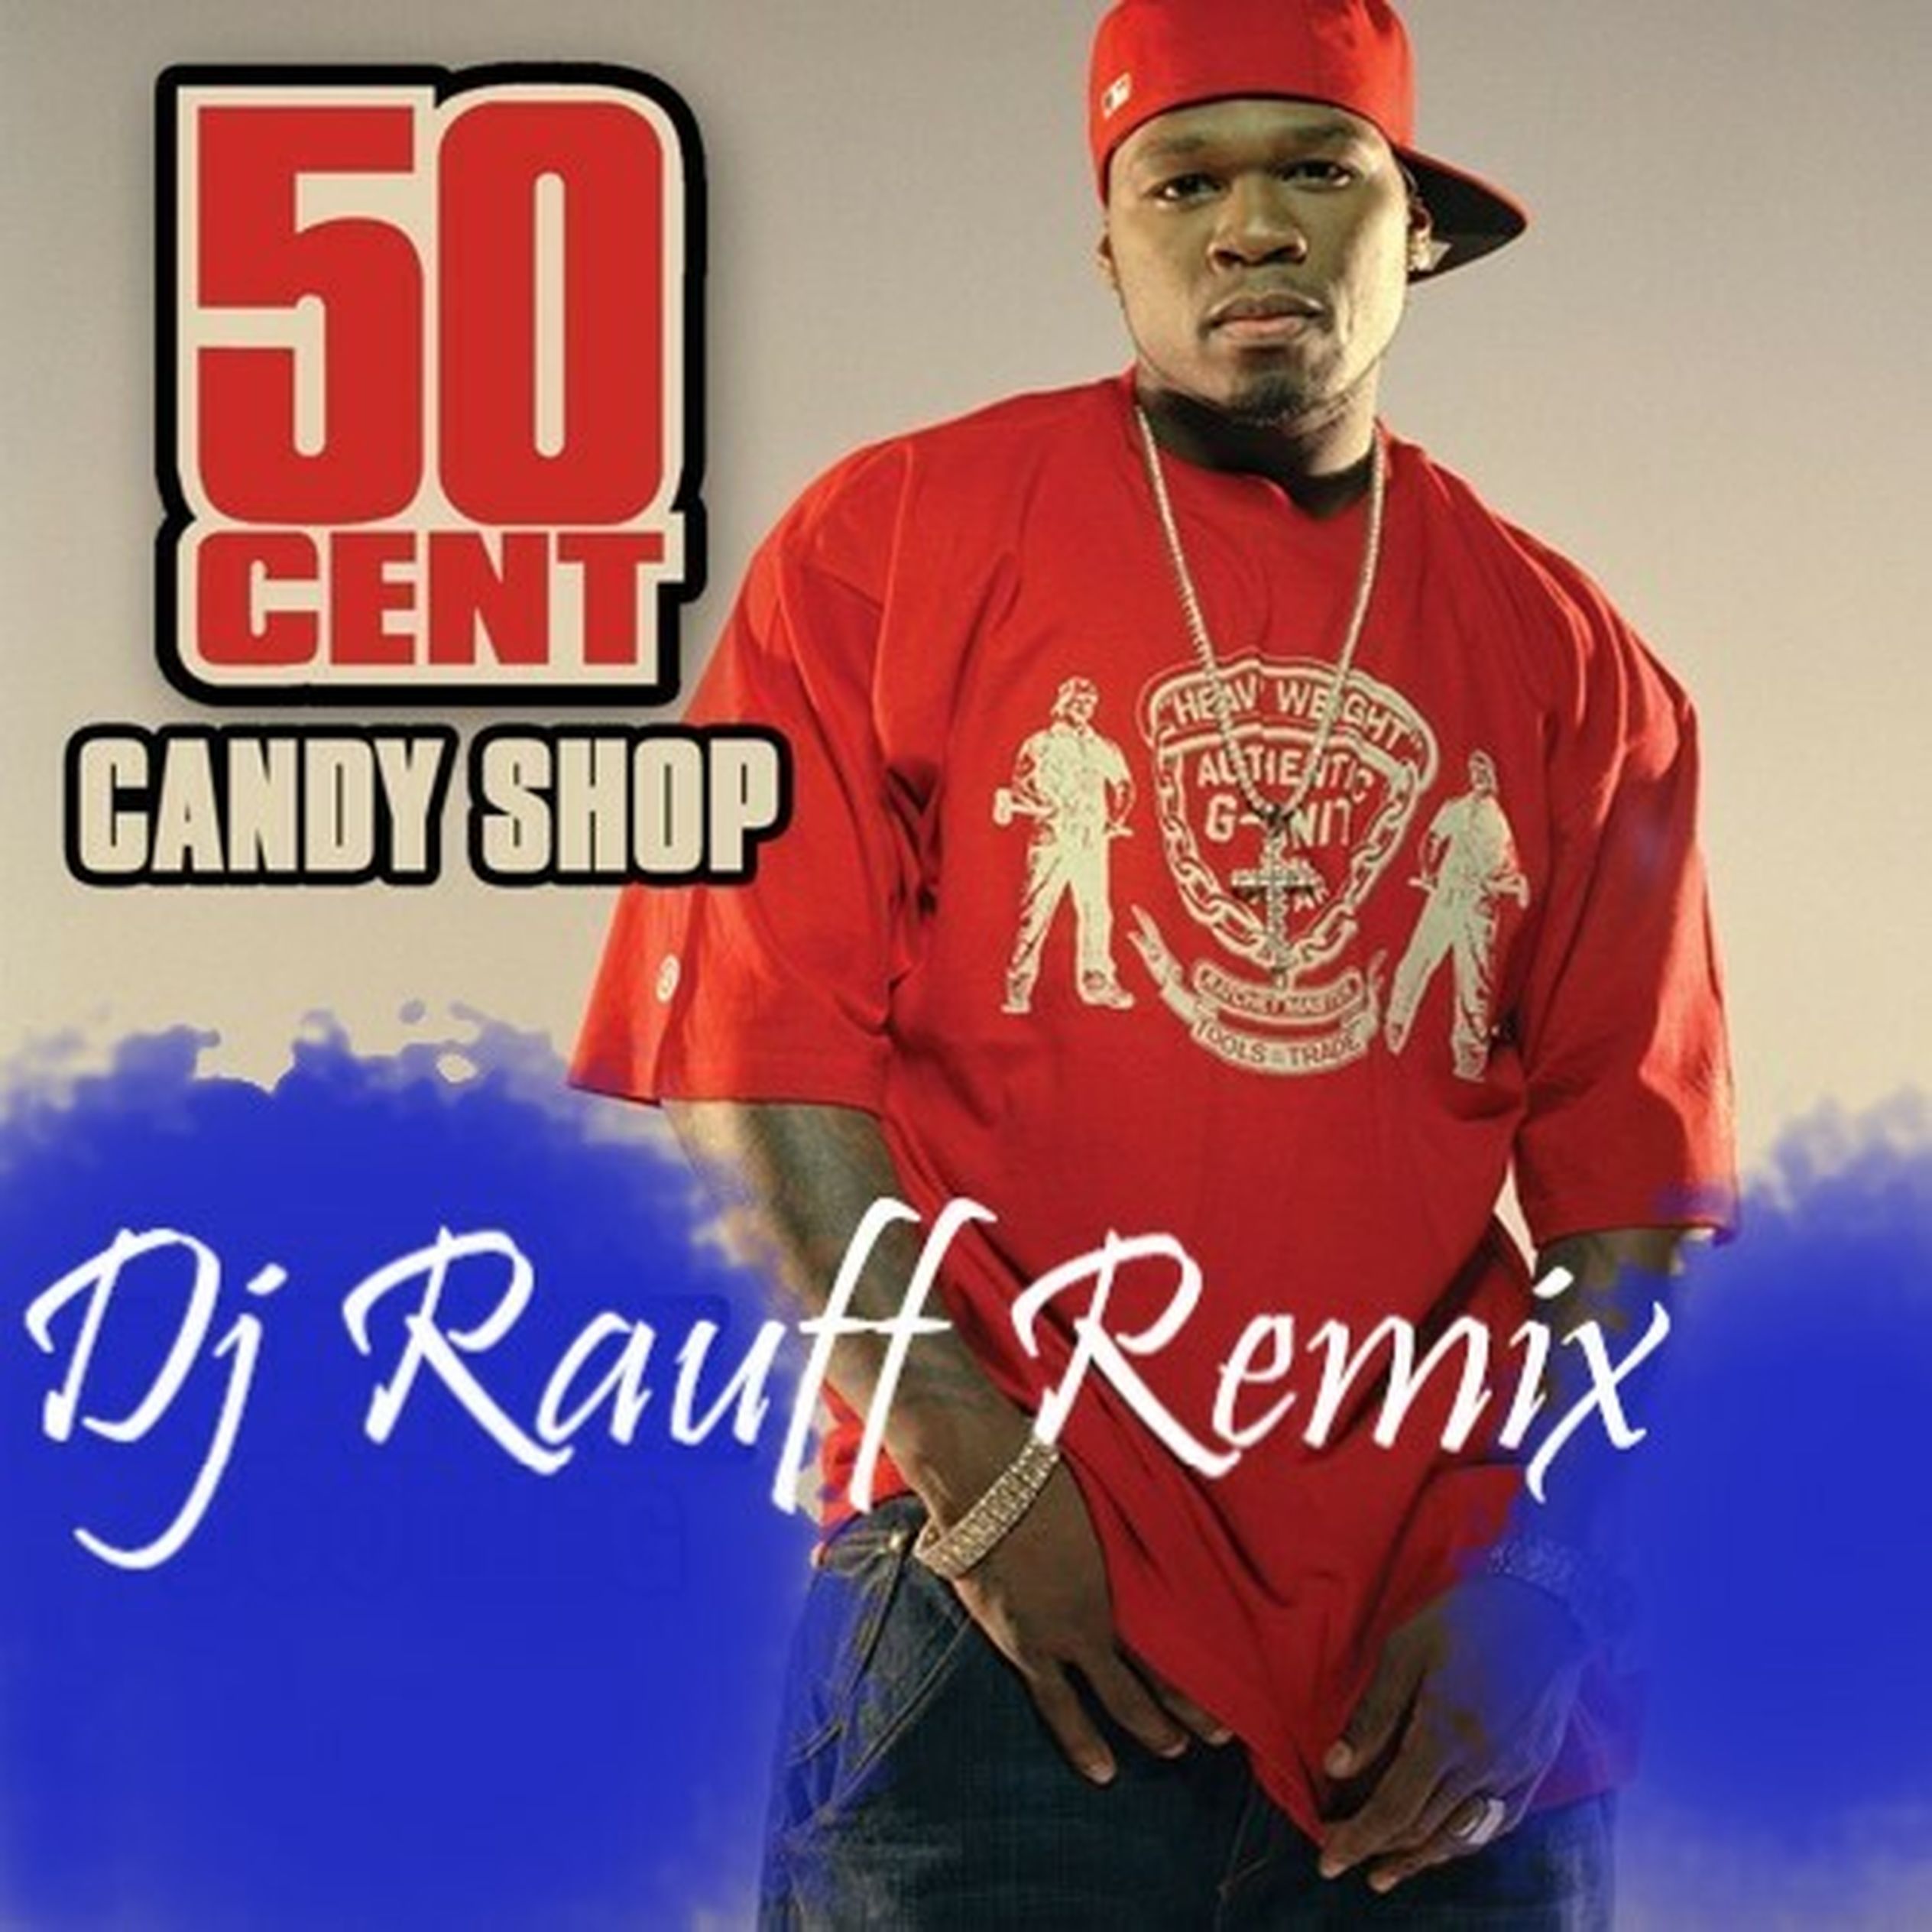 50 Cent - Candy shop альбом. 50 Сент Кэнди шоп. DJ Rauff. 50 Cent Candy shop Remix Bass.